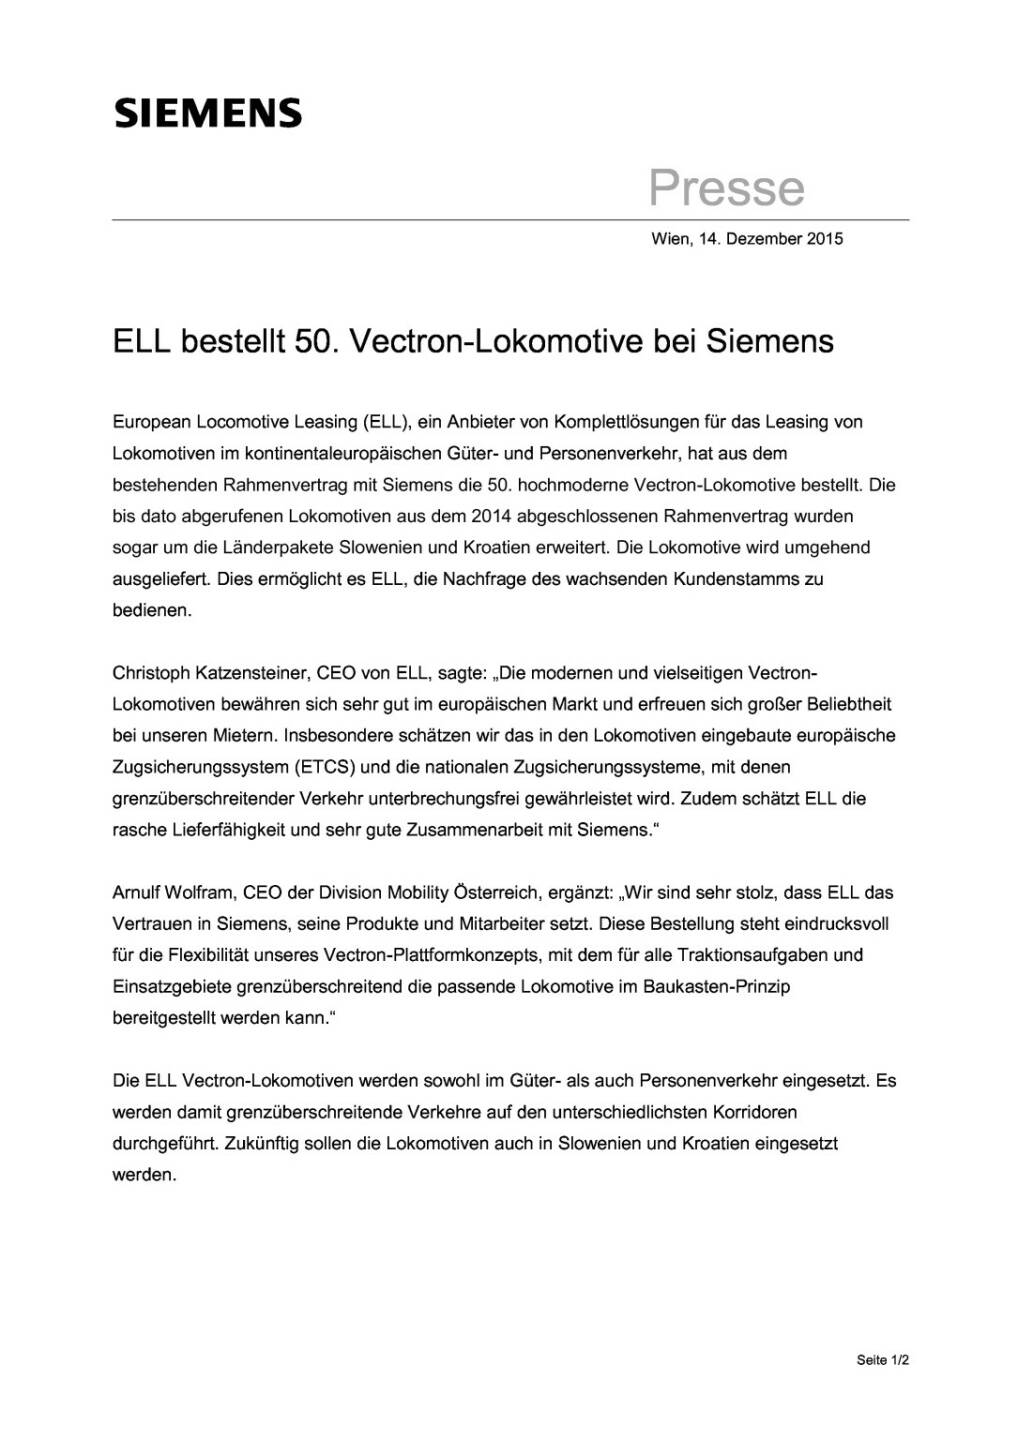 ELL bestellt 50. Vectron-Lokomotive bei Siemens, Seite 1/2, komplettes Dokument unter http://boerse-social.com/static/uploads/file_519_ell_bestellt_50_vectron-lokomotive_bei_siemens.pdf